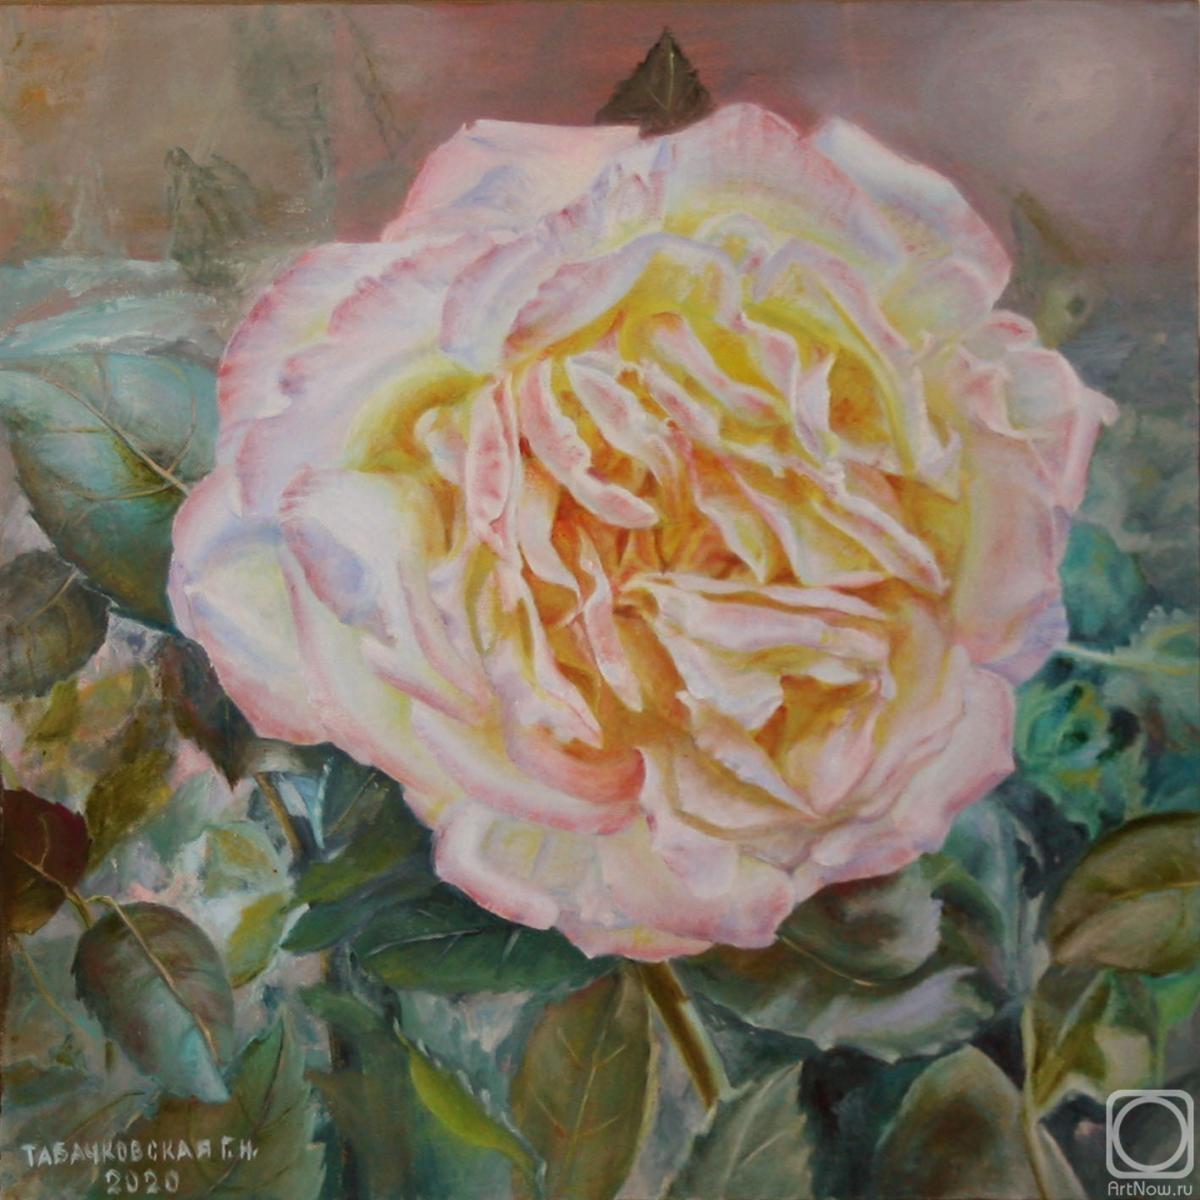 Kudryashov Galina. The Rose